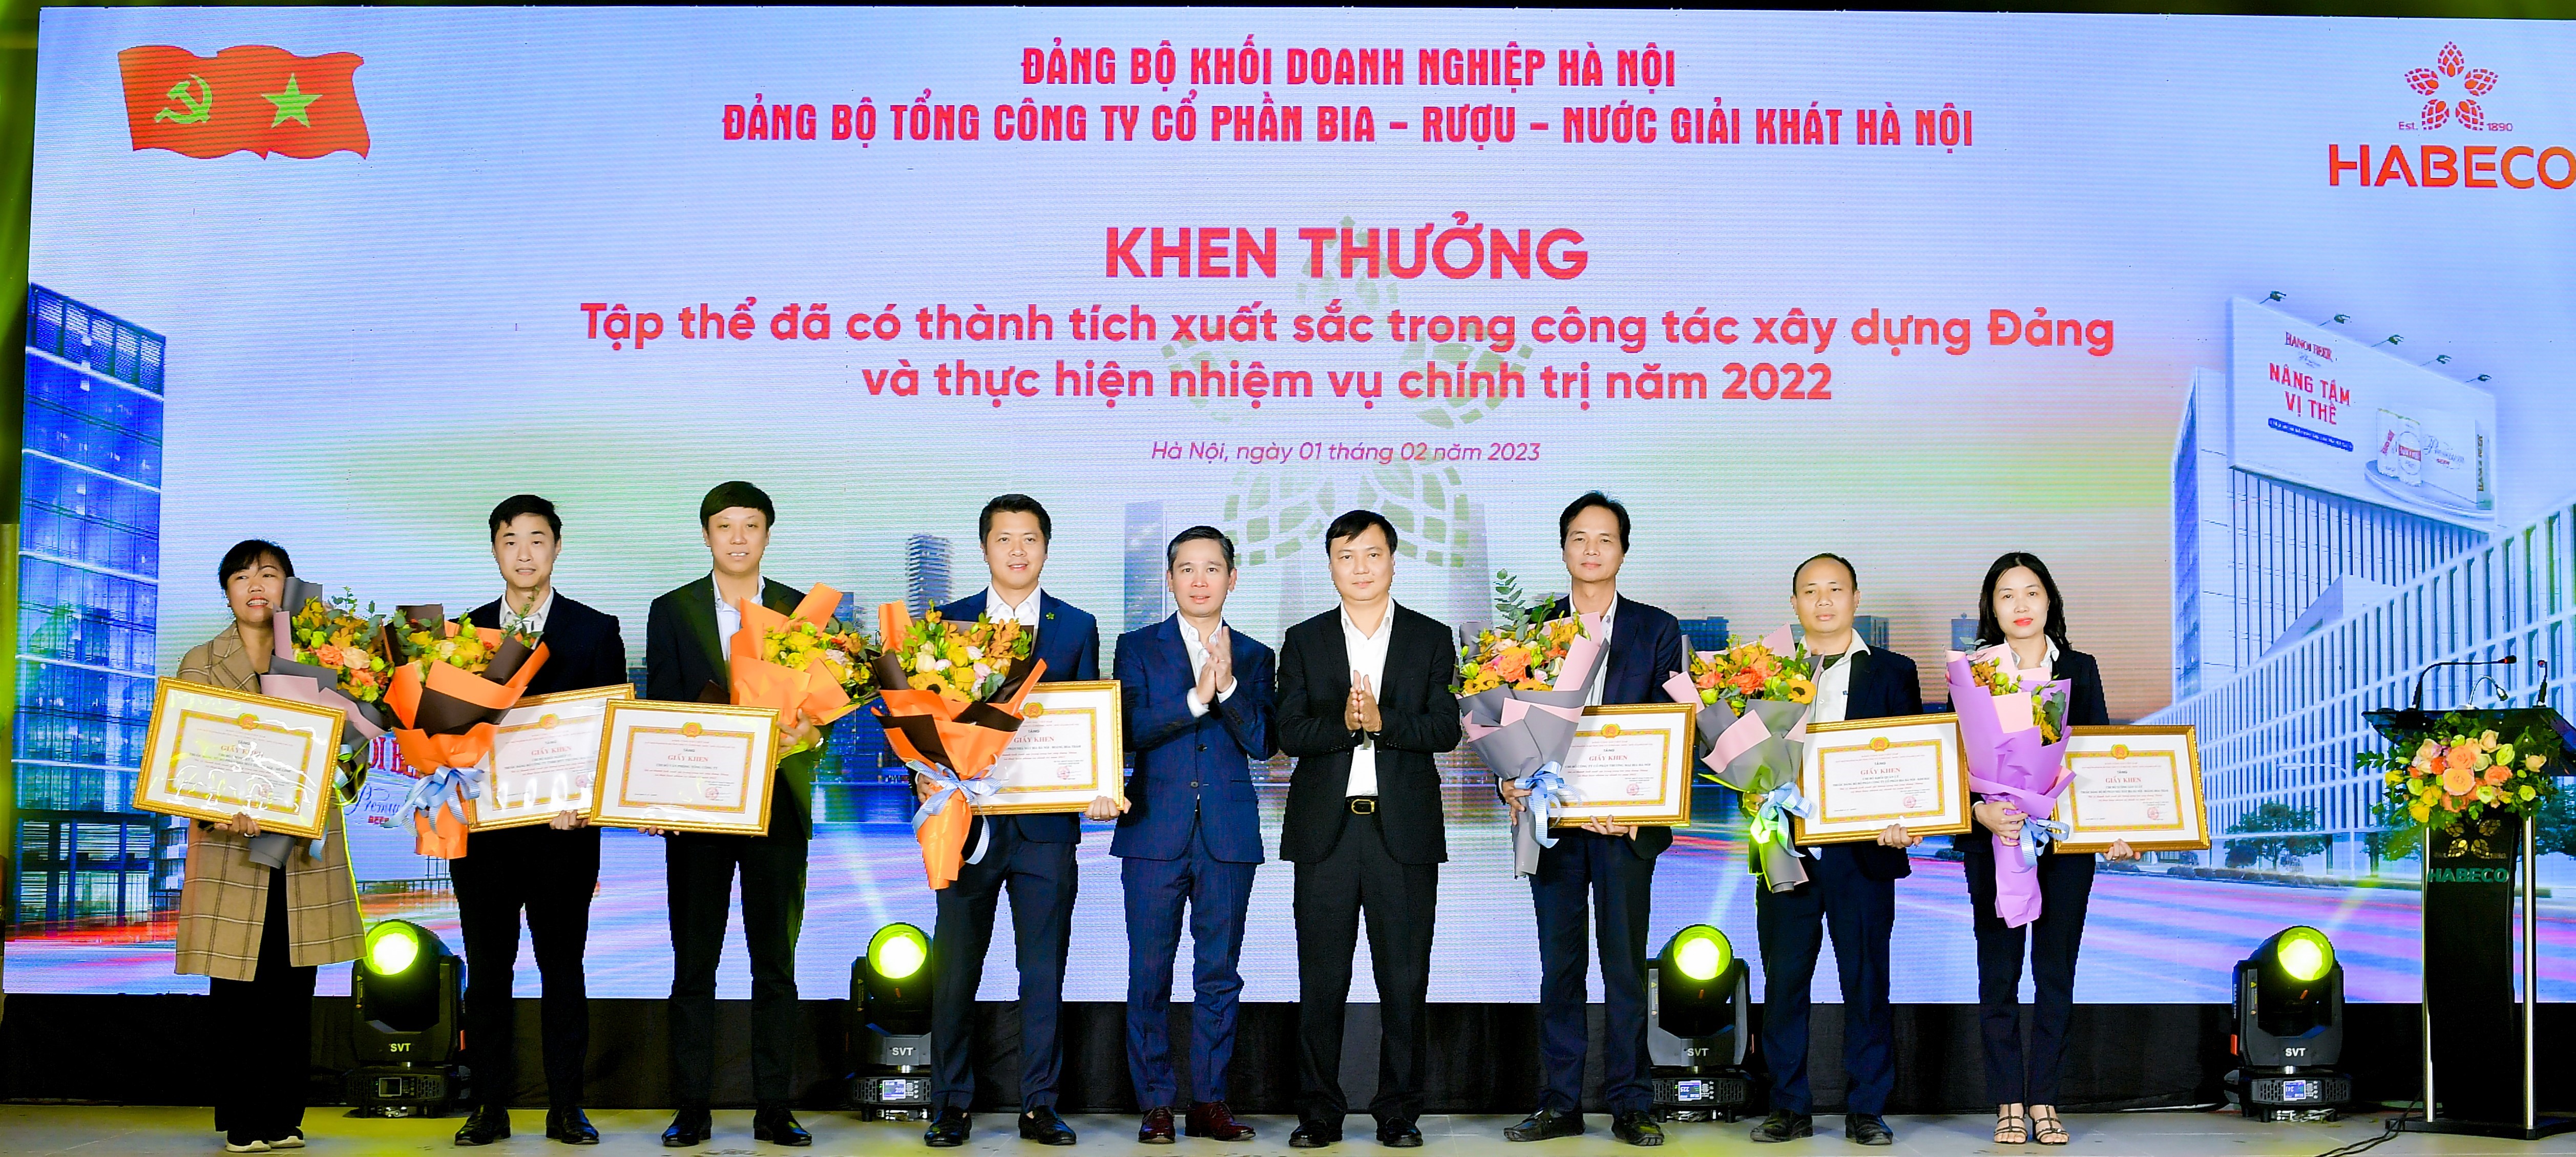 Đảng bộ HABECO tổ chức Hội nghị tổng kết công tác xây dựng Đảng năm 2022, triển khai nhiệm vụ năm 2023 và trao tặng Huy hiệu 30 năm tuổi Đảng